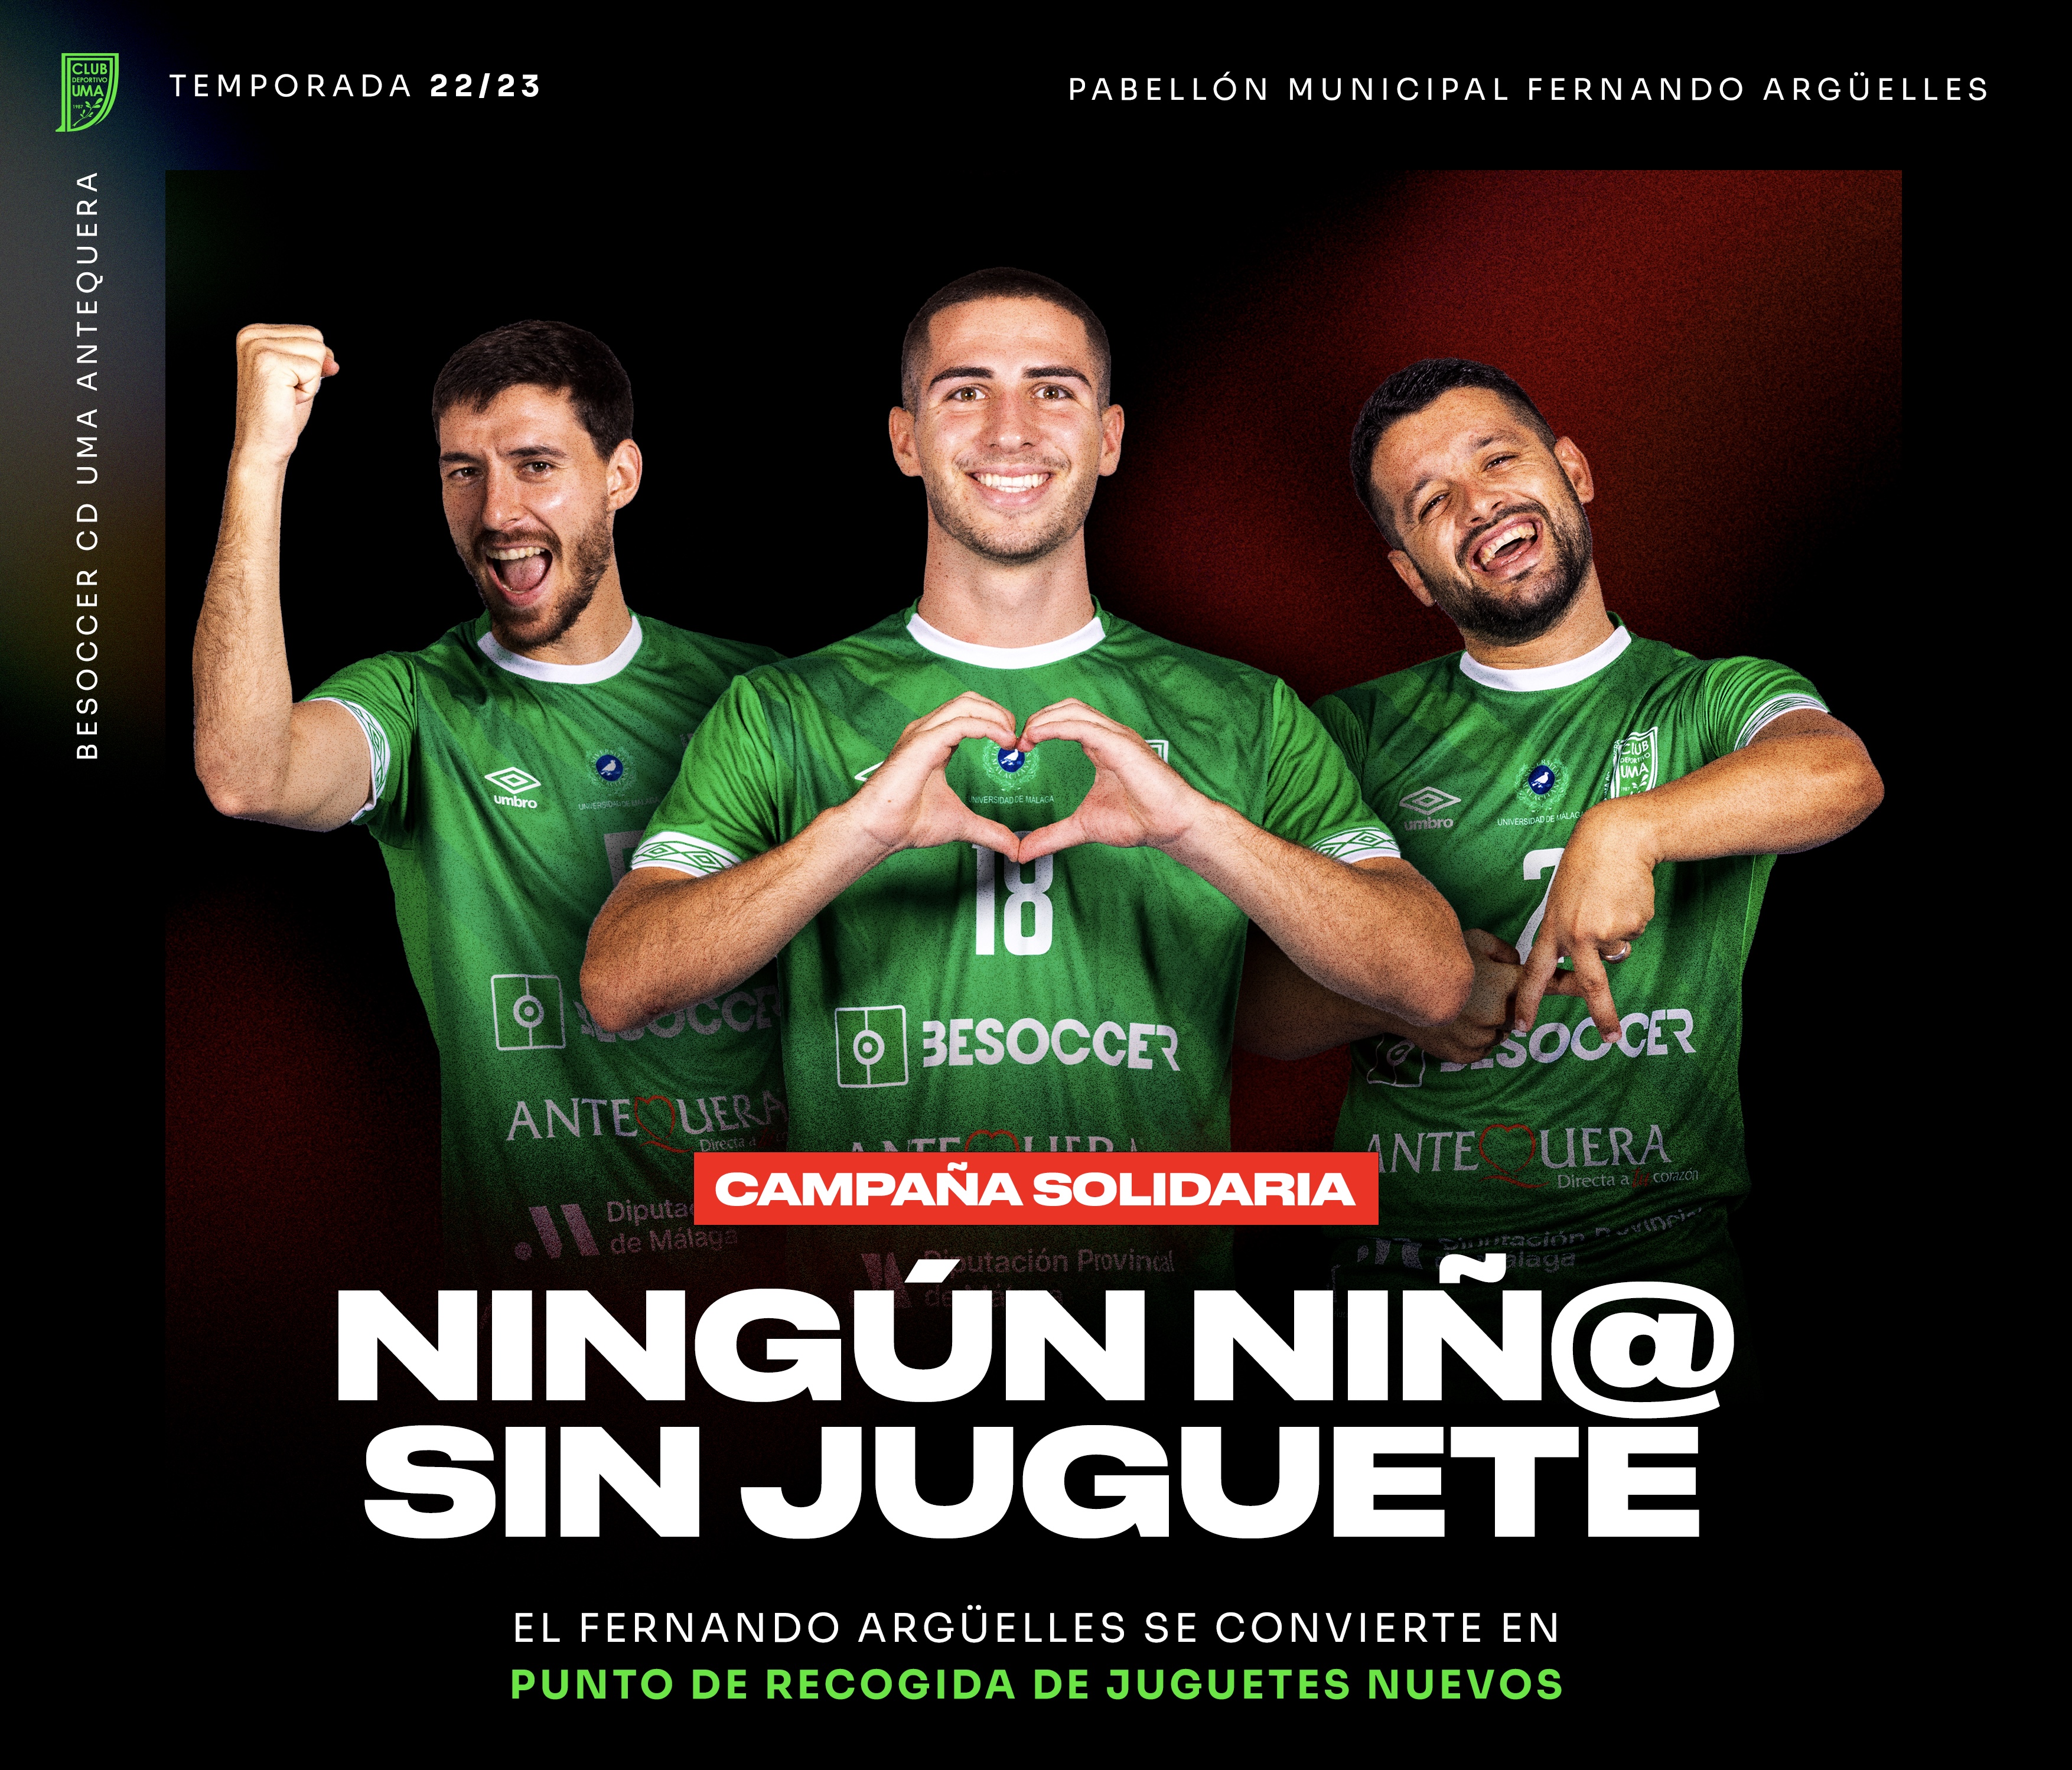 El club colabora con la campaña solidaria “Ningún Niño sin Juguete” del Ayuntamiento de Antequera